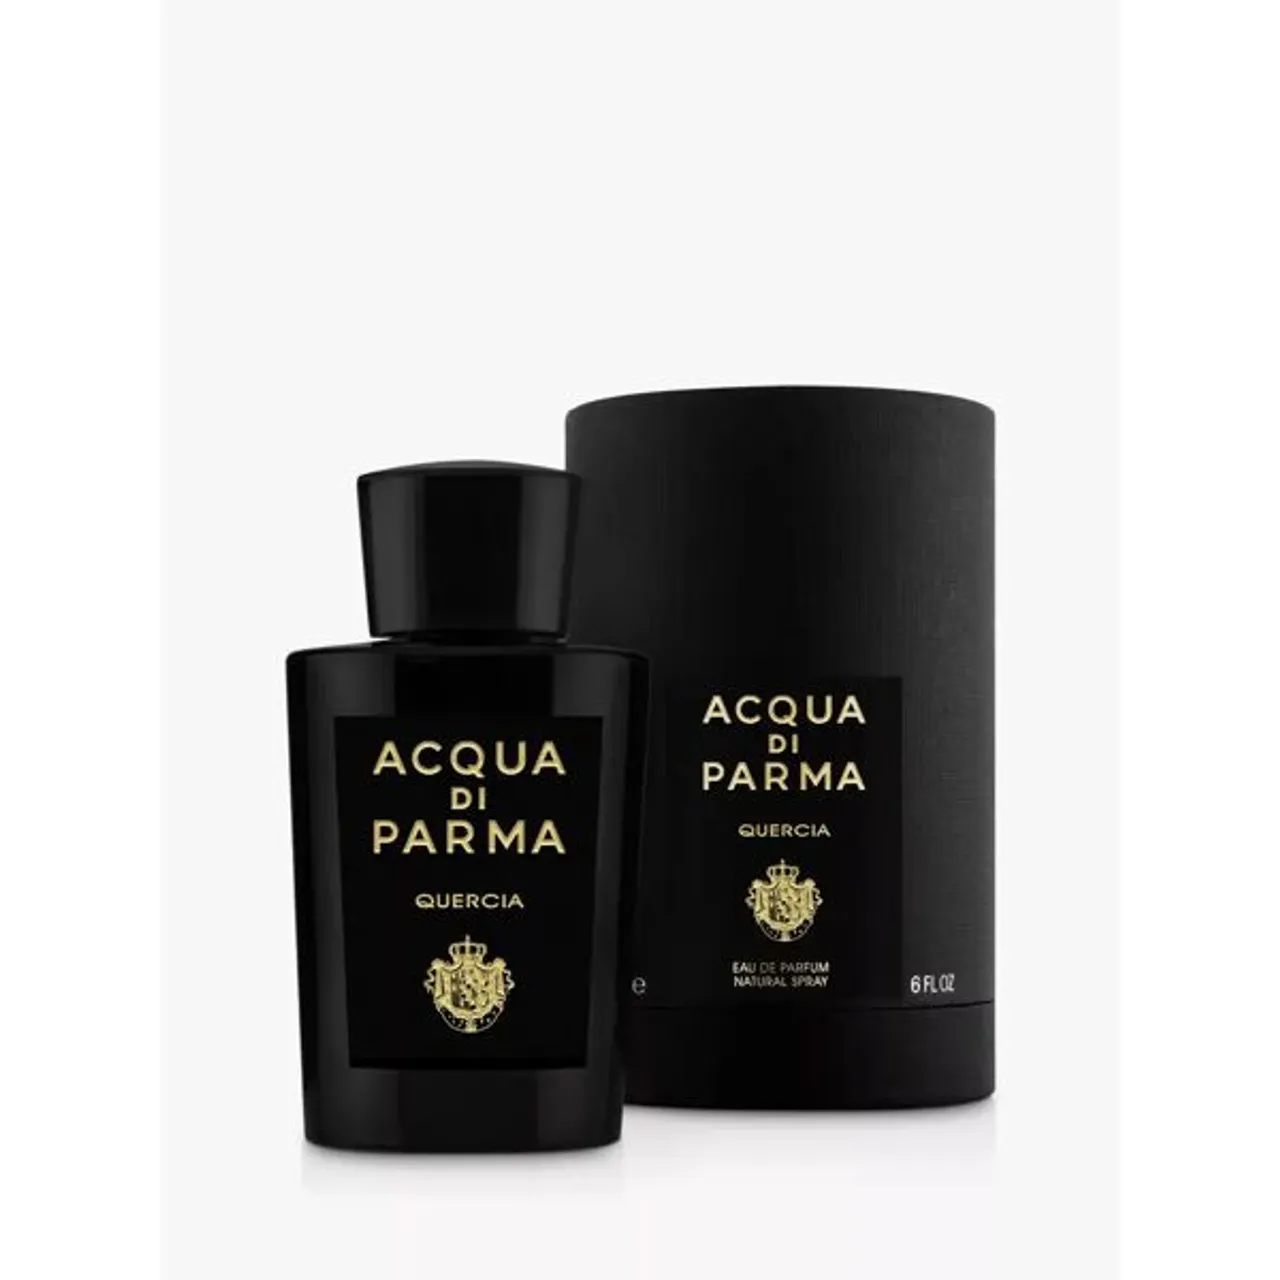 Acqua di Parma Quercia Eau de Parfum - Unisex - Size: 180ml